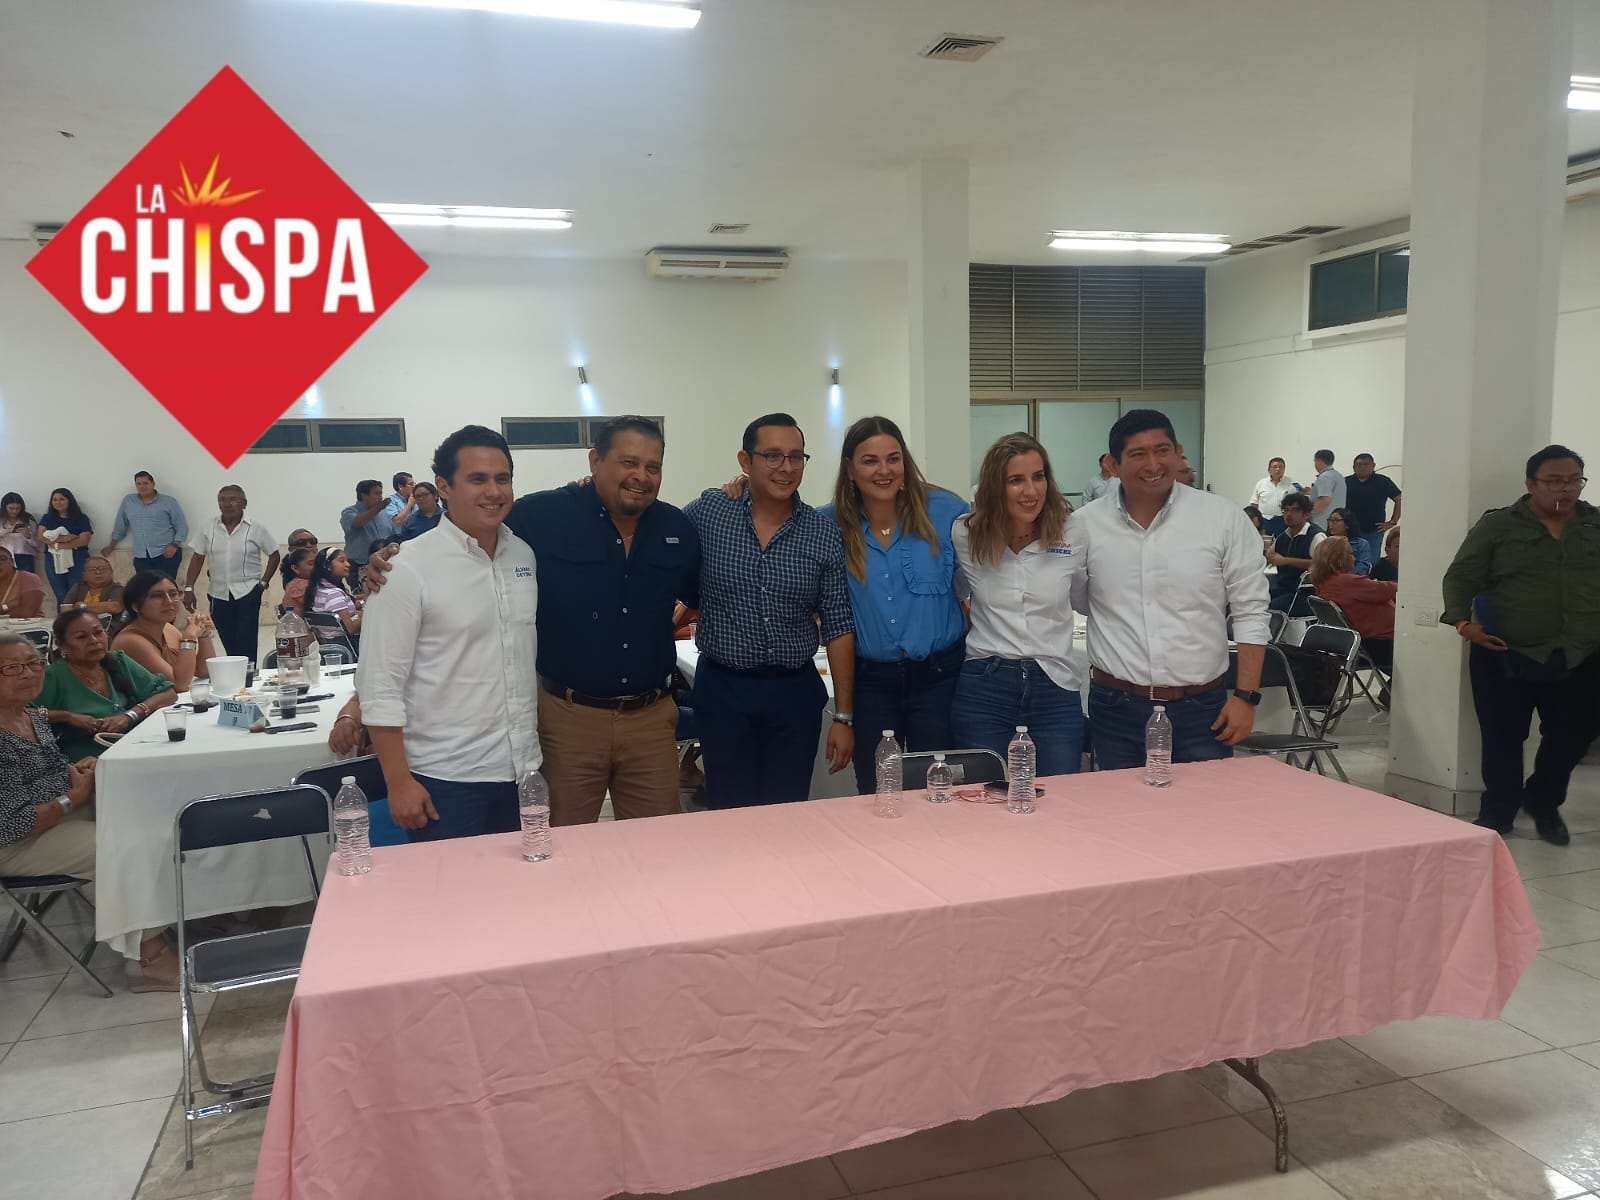 Pay Programa Alimentario de Yucatán celebro su posada con presencia de Cecilia Patrón, Paola Peniche